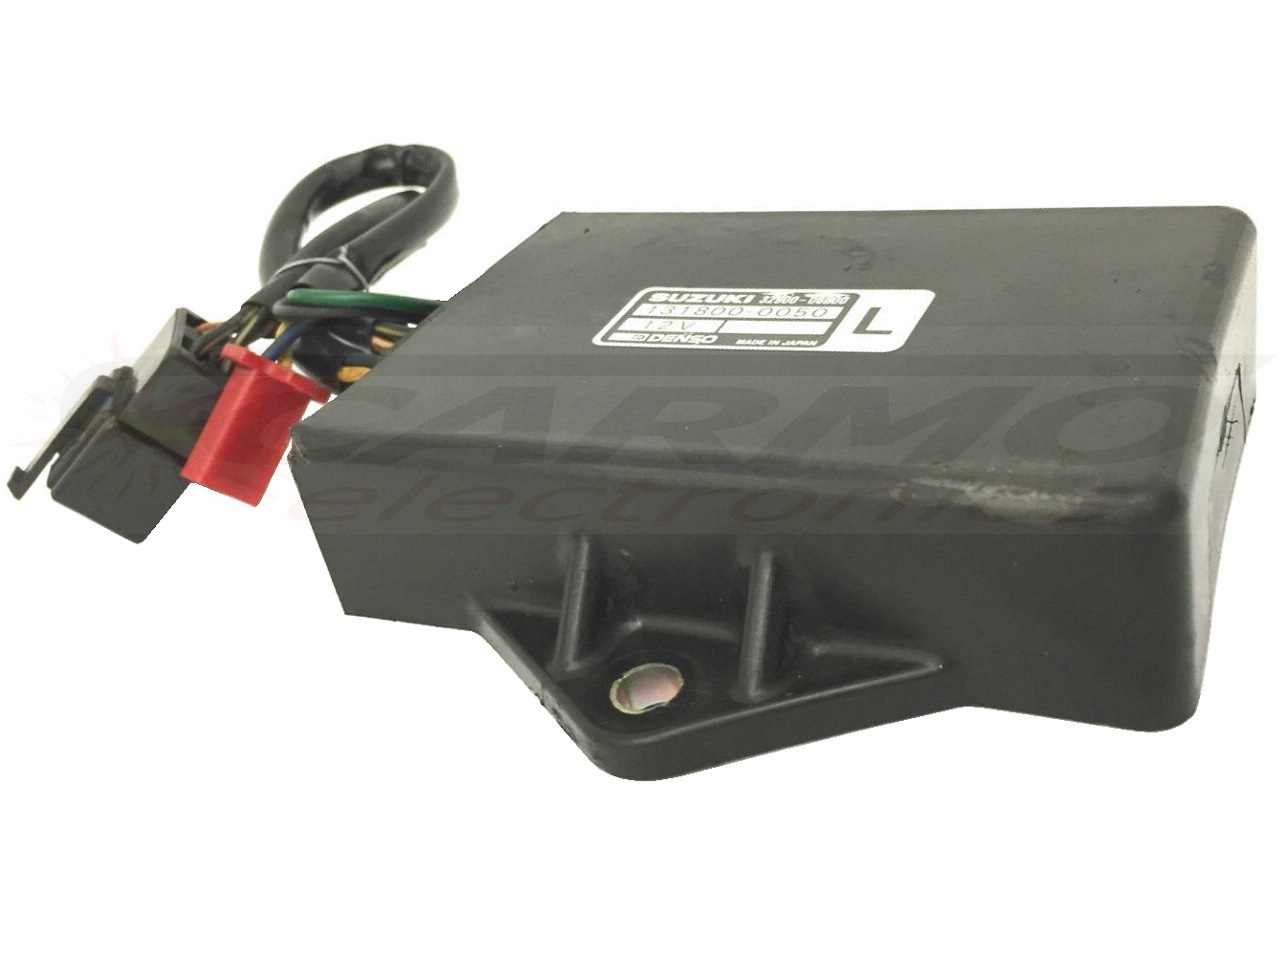 GSXR750 TCI CDI dispositif de commande boîte noire (32900-27A00, 131100-4641)